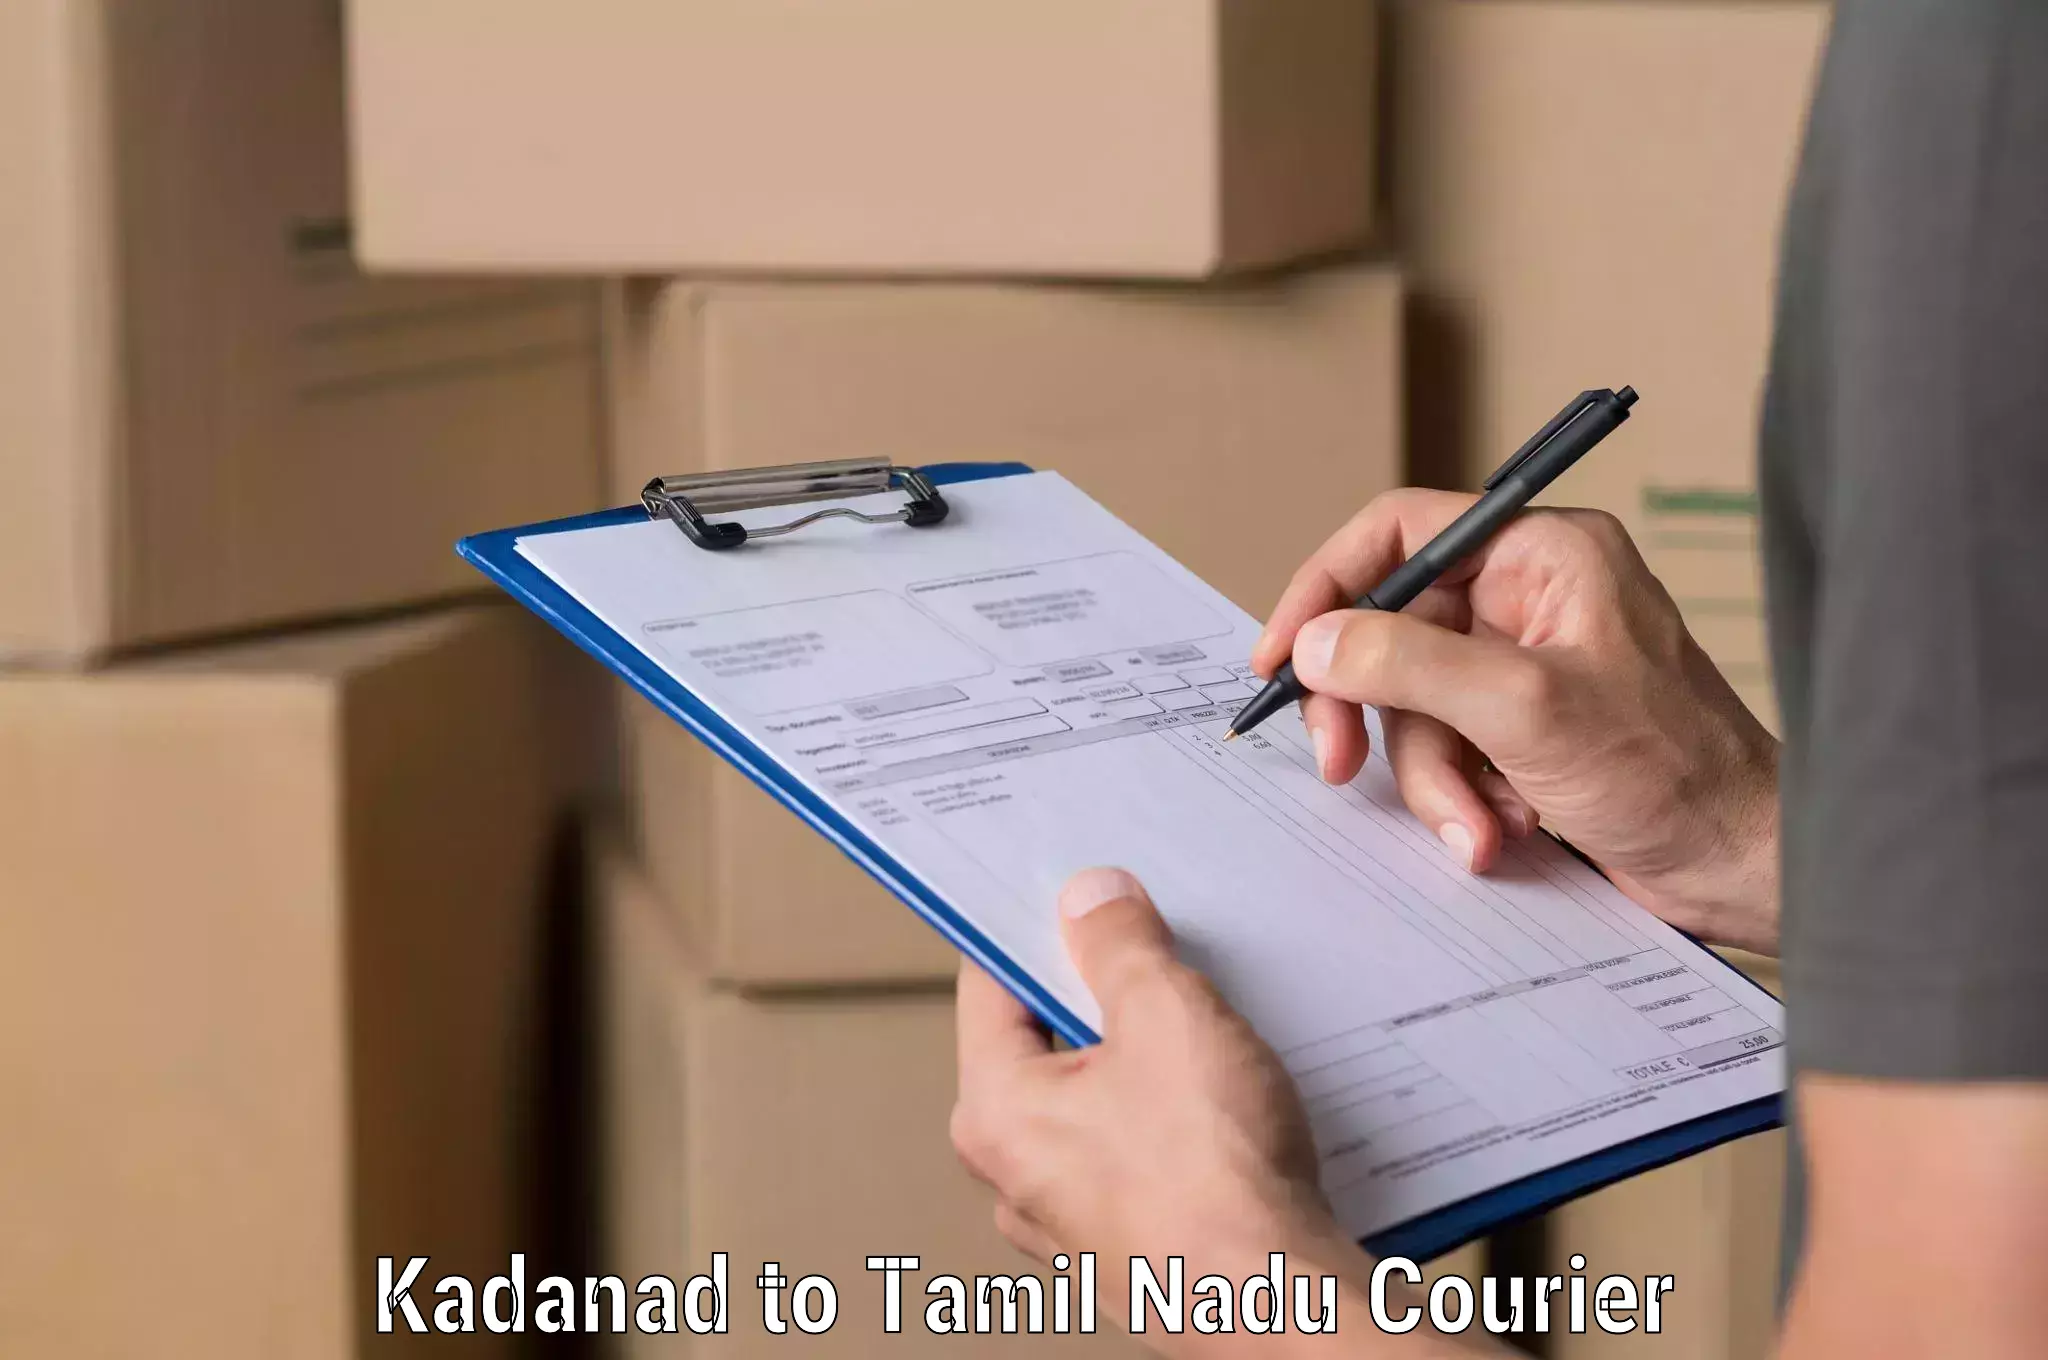 Courier service comparison Kadanad to Avadi